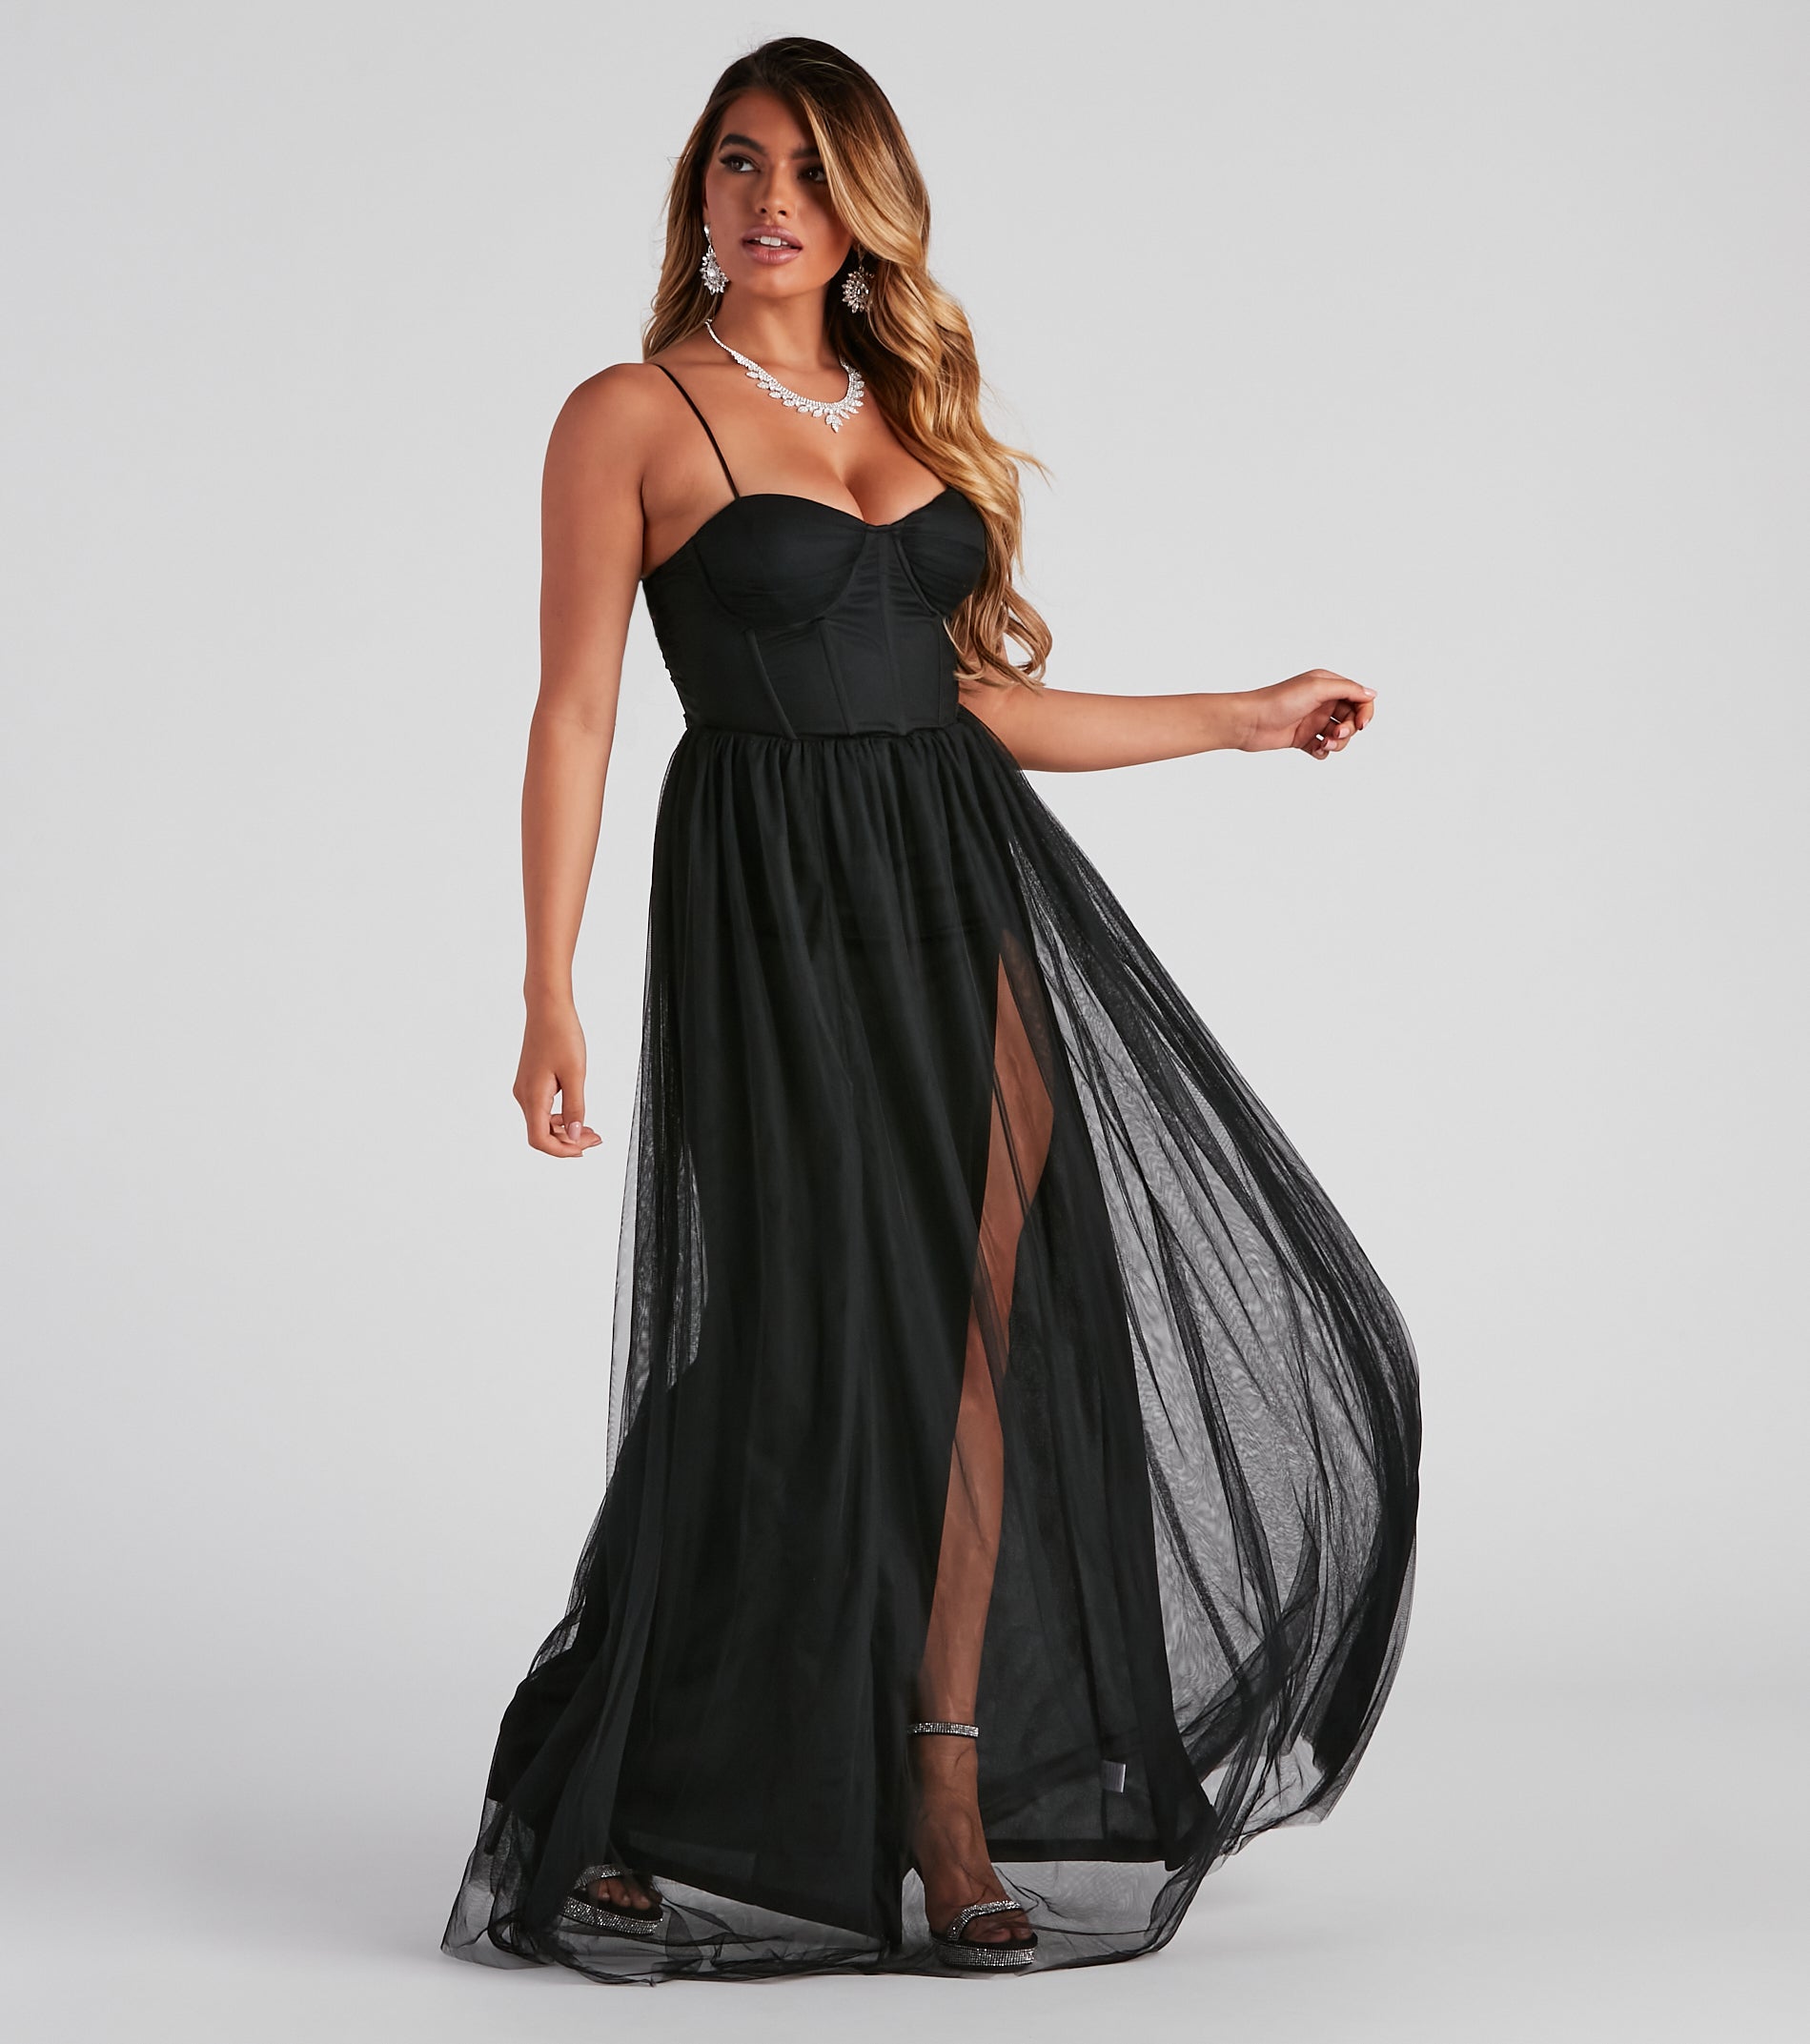 Estelle Formal High Slit A-Line Dress